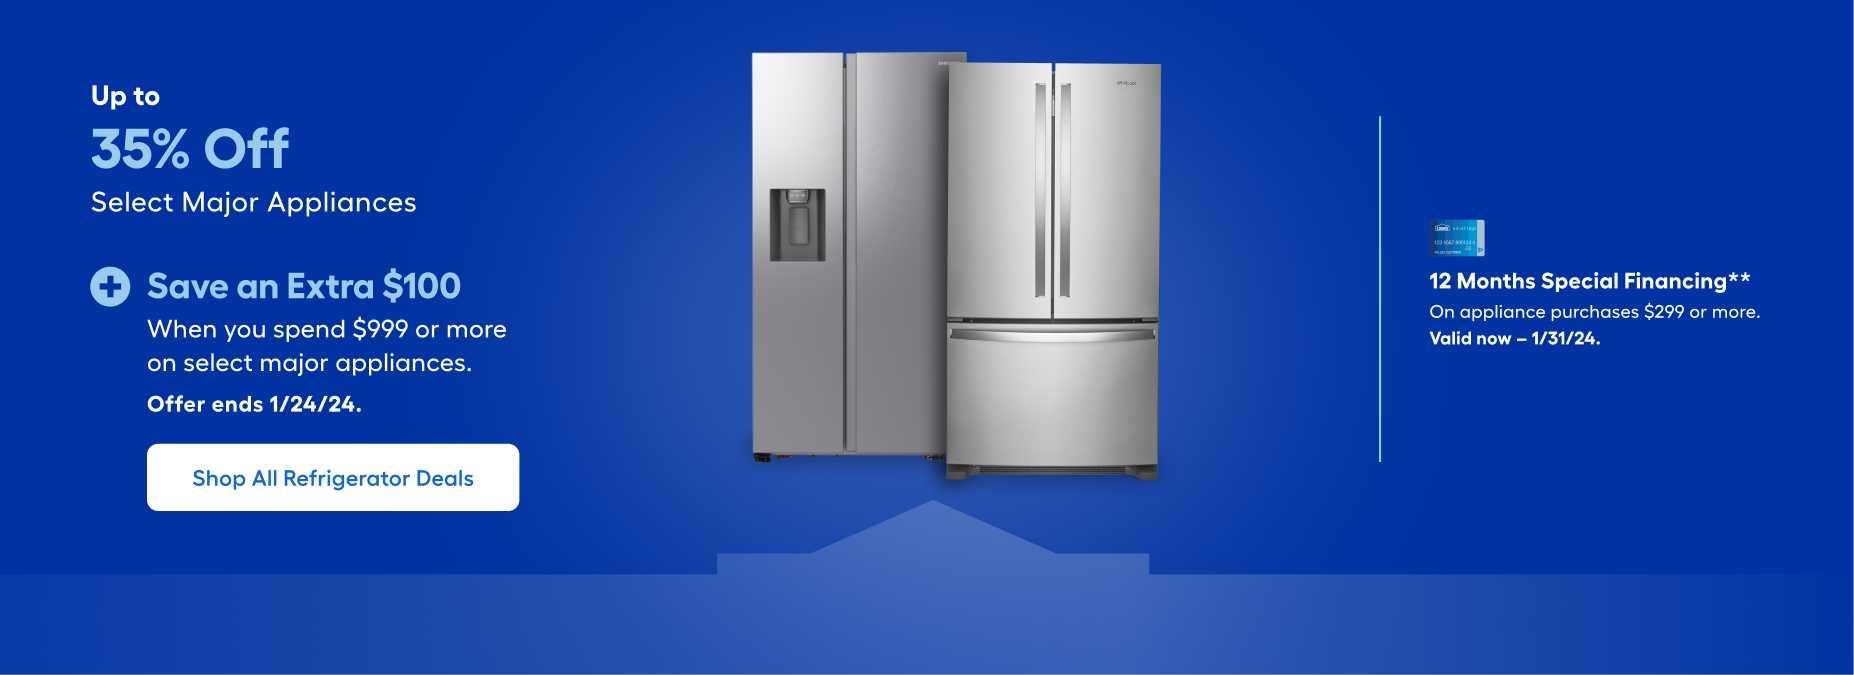 https://mobileimages.lowes.com/marketingimages/5f15fd65-3c8c-4079-bb68-0ec80cf2d63b/shop-all-refrigerators-deals-hero.png